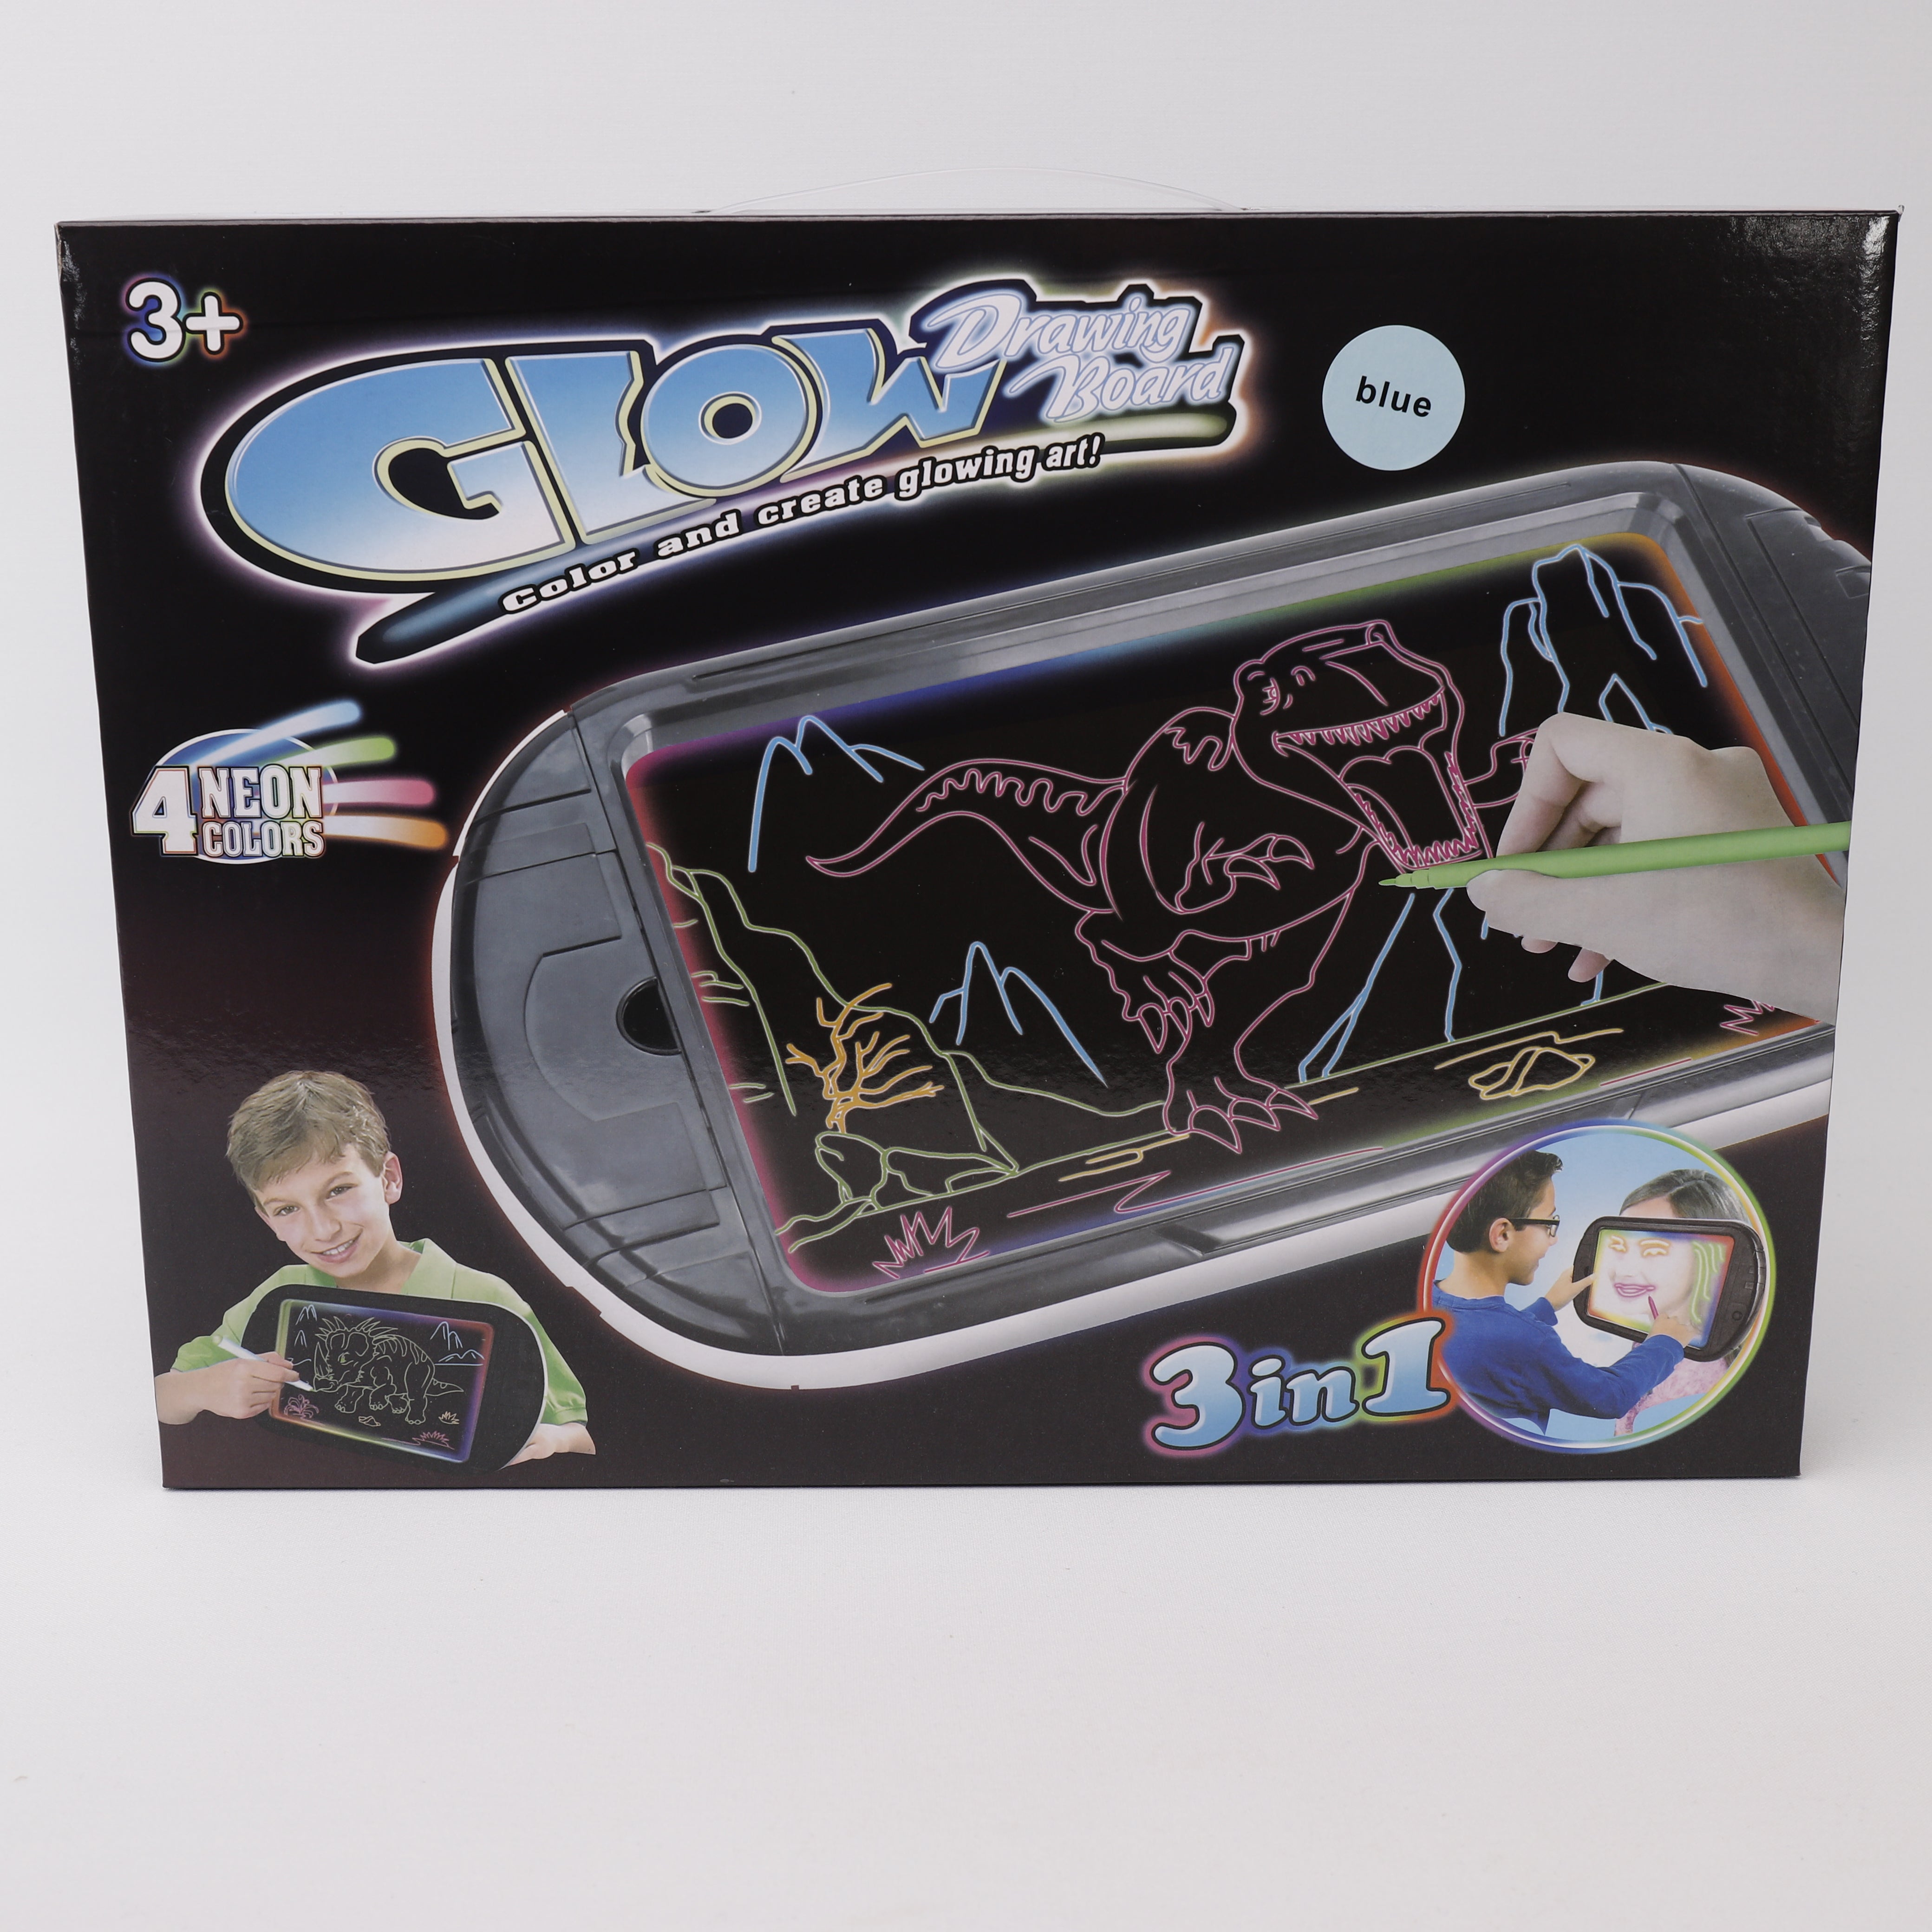 GLOW Drawing Board, Led Licht Zeichenbrett Glow 4 Markierungen 34x22cm, Dinotoys